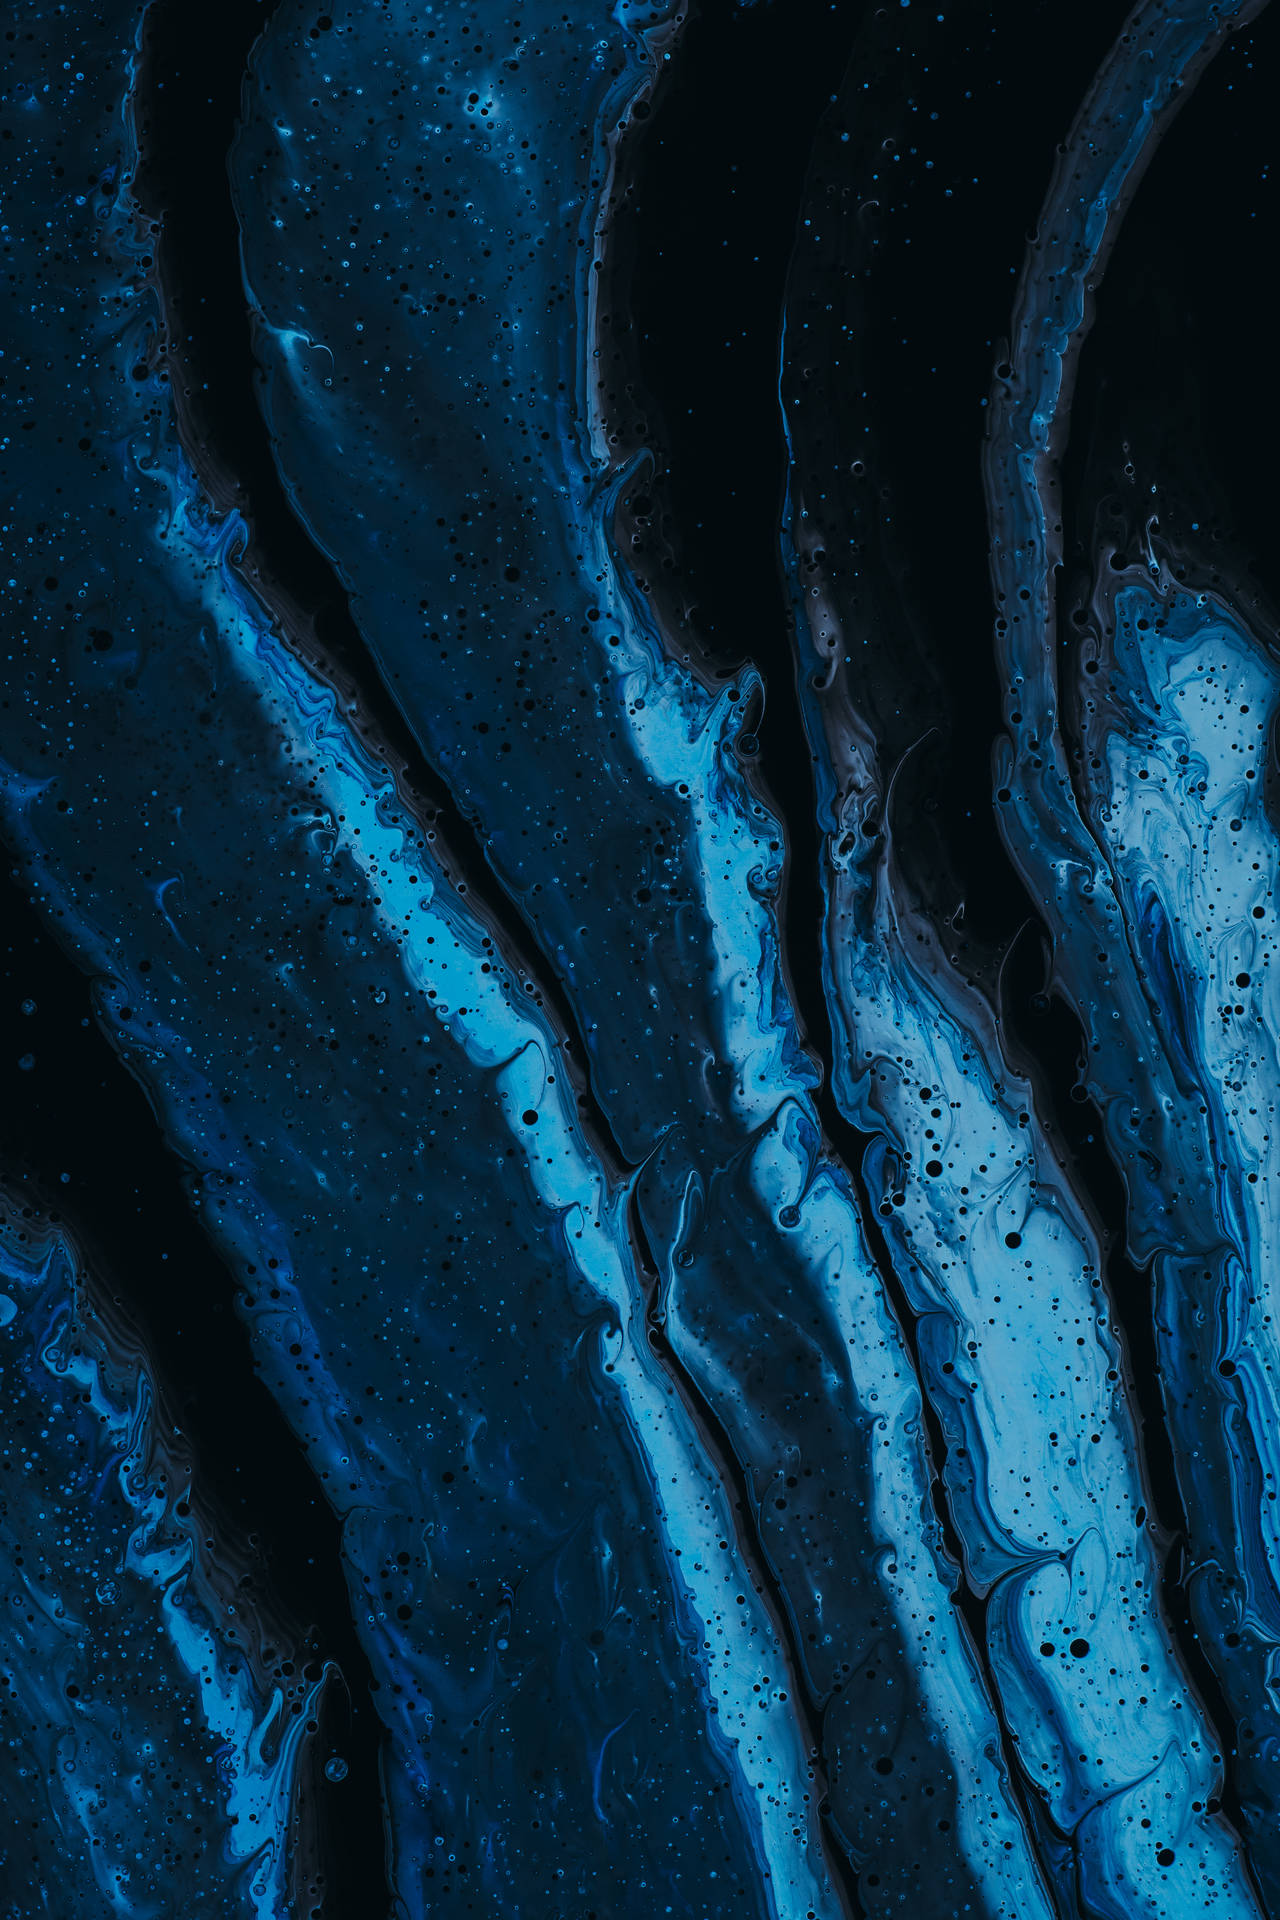 Dark Blue Abstract Art Background